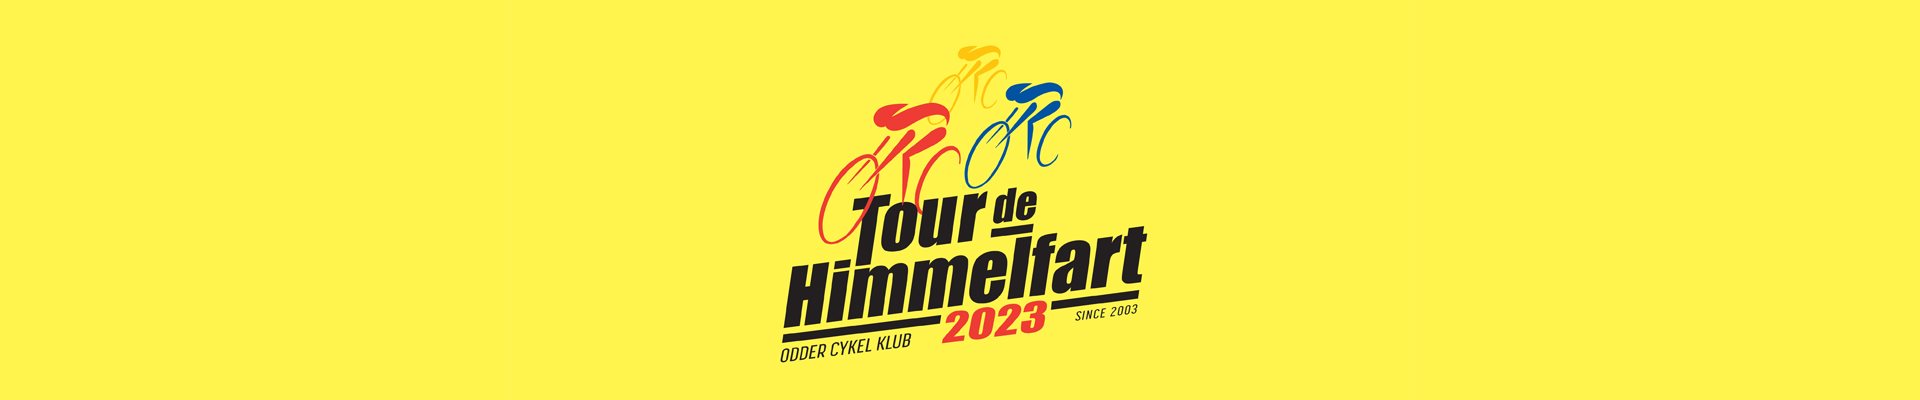 Tour de Himmelfart 2023 - Entry List